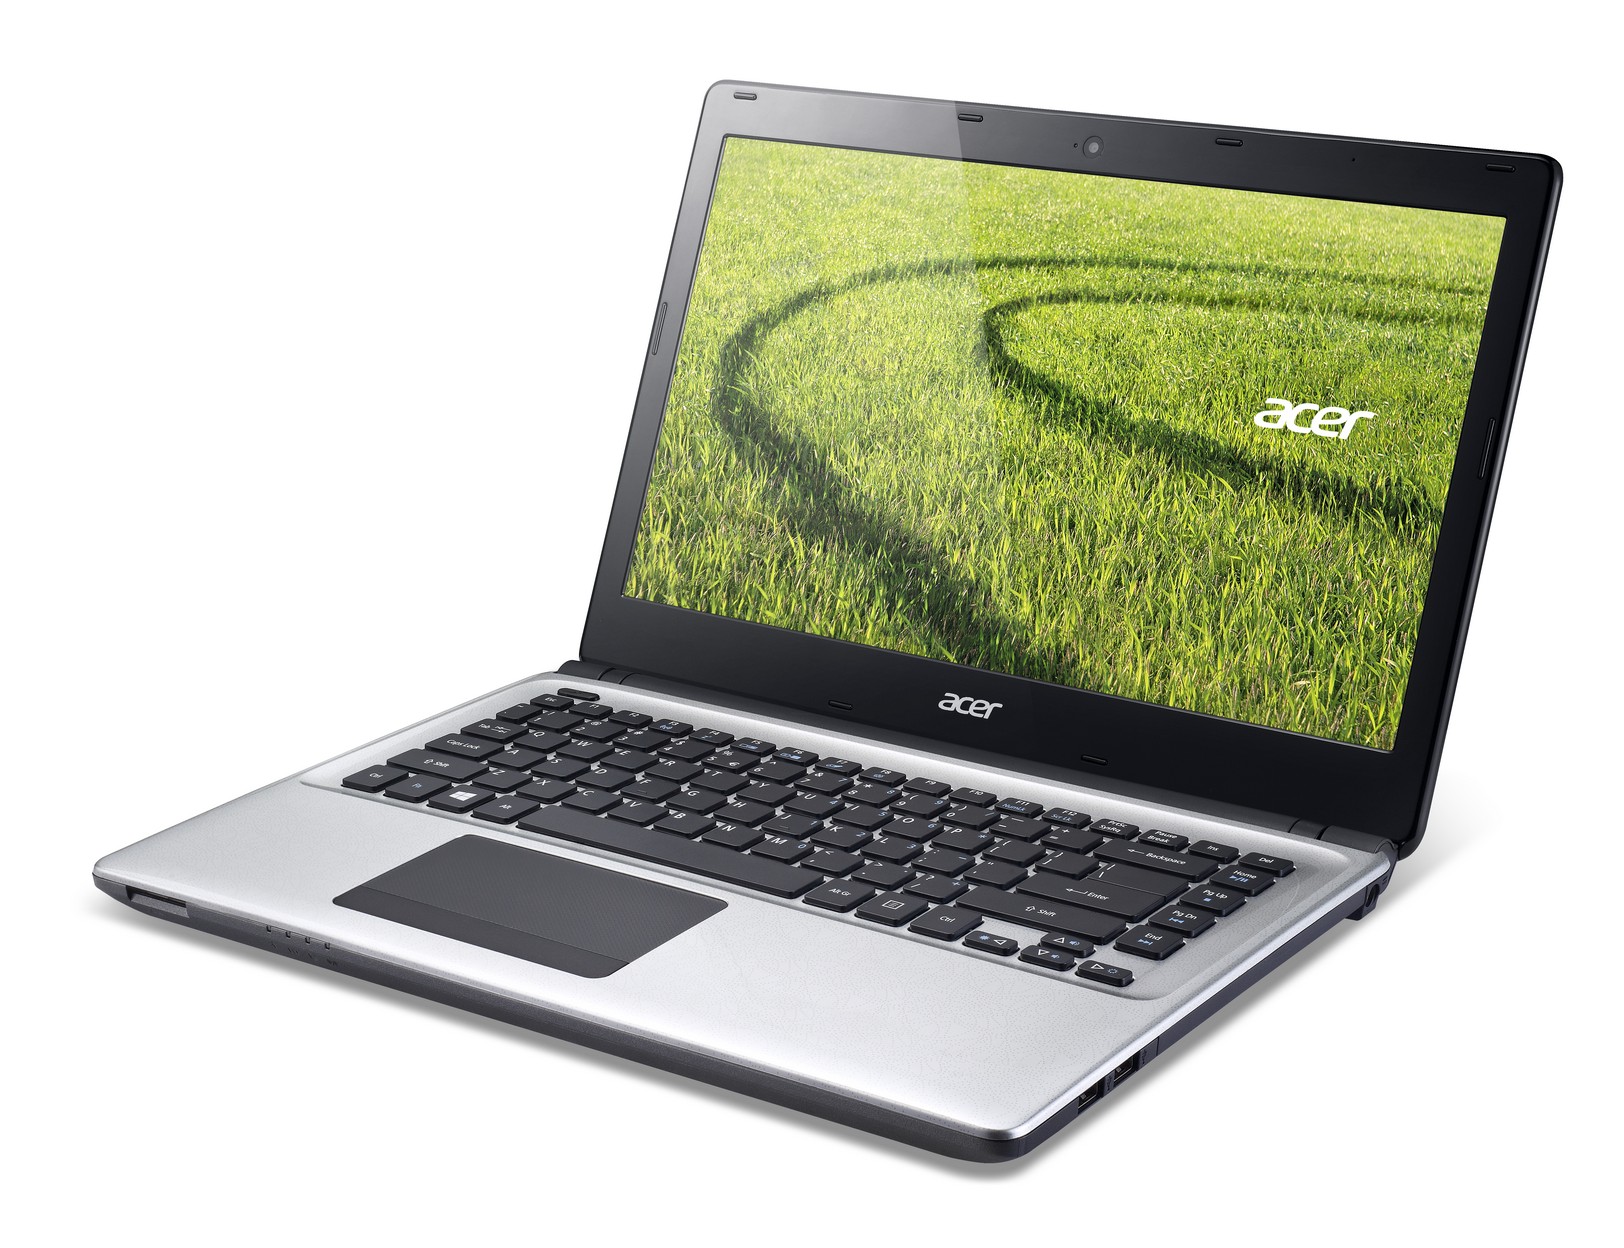 Laptop giá rẻ Acer Aspire E1 432 mang lại phong cách sang trọng lịch lãm cho người dùng